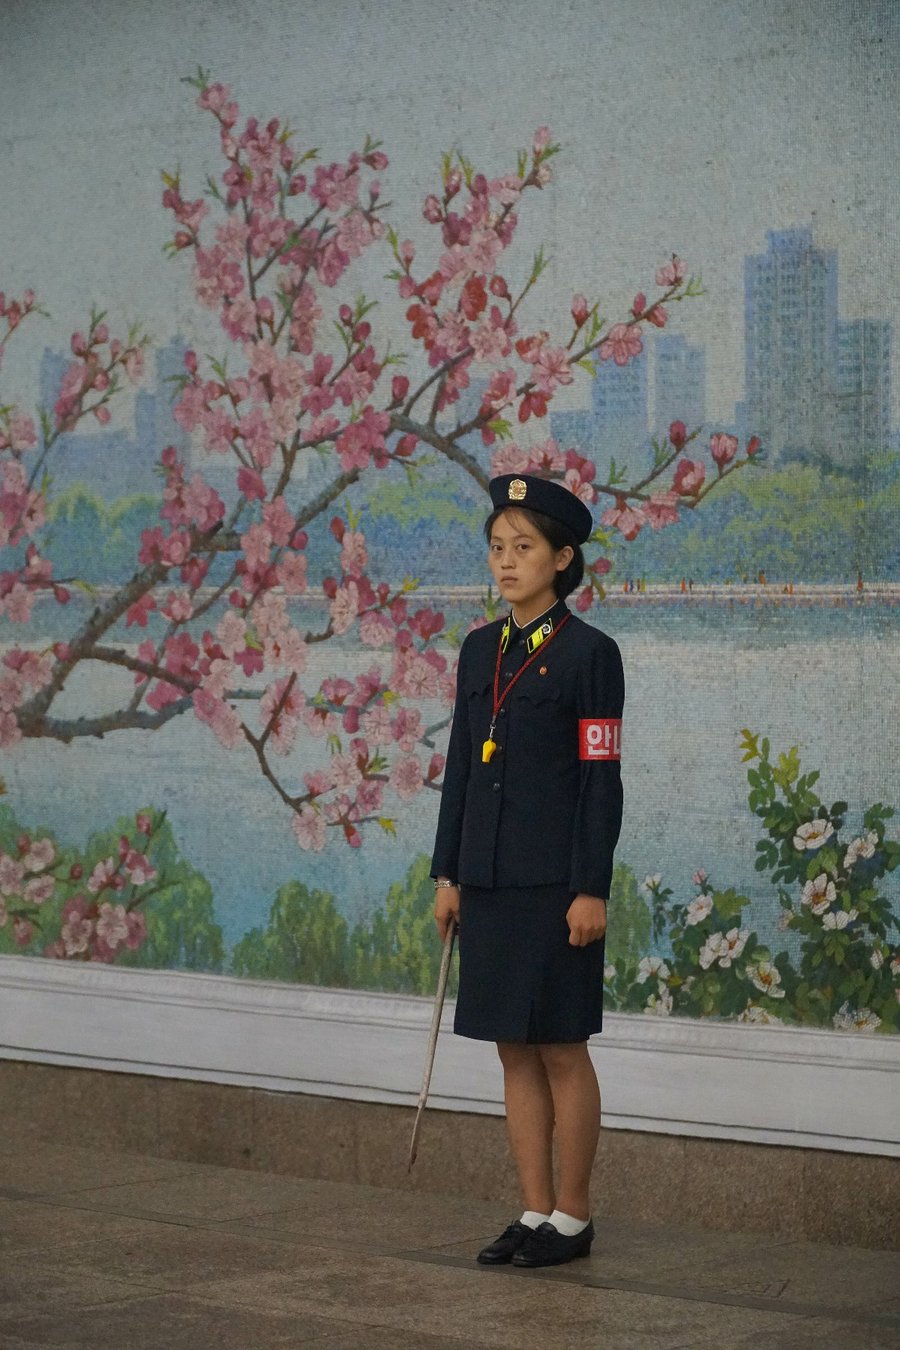 הצלם החרדי ביקר בחשאי בצפון קוריאה - וחטף מכות. צפו